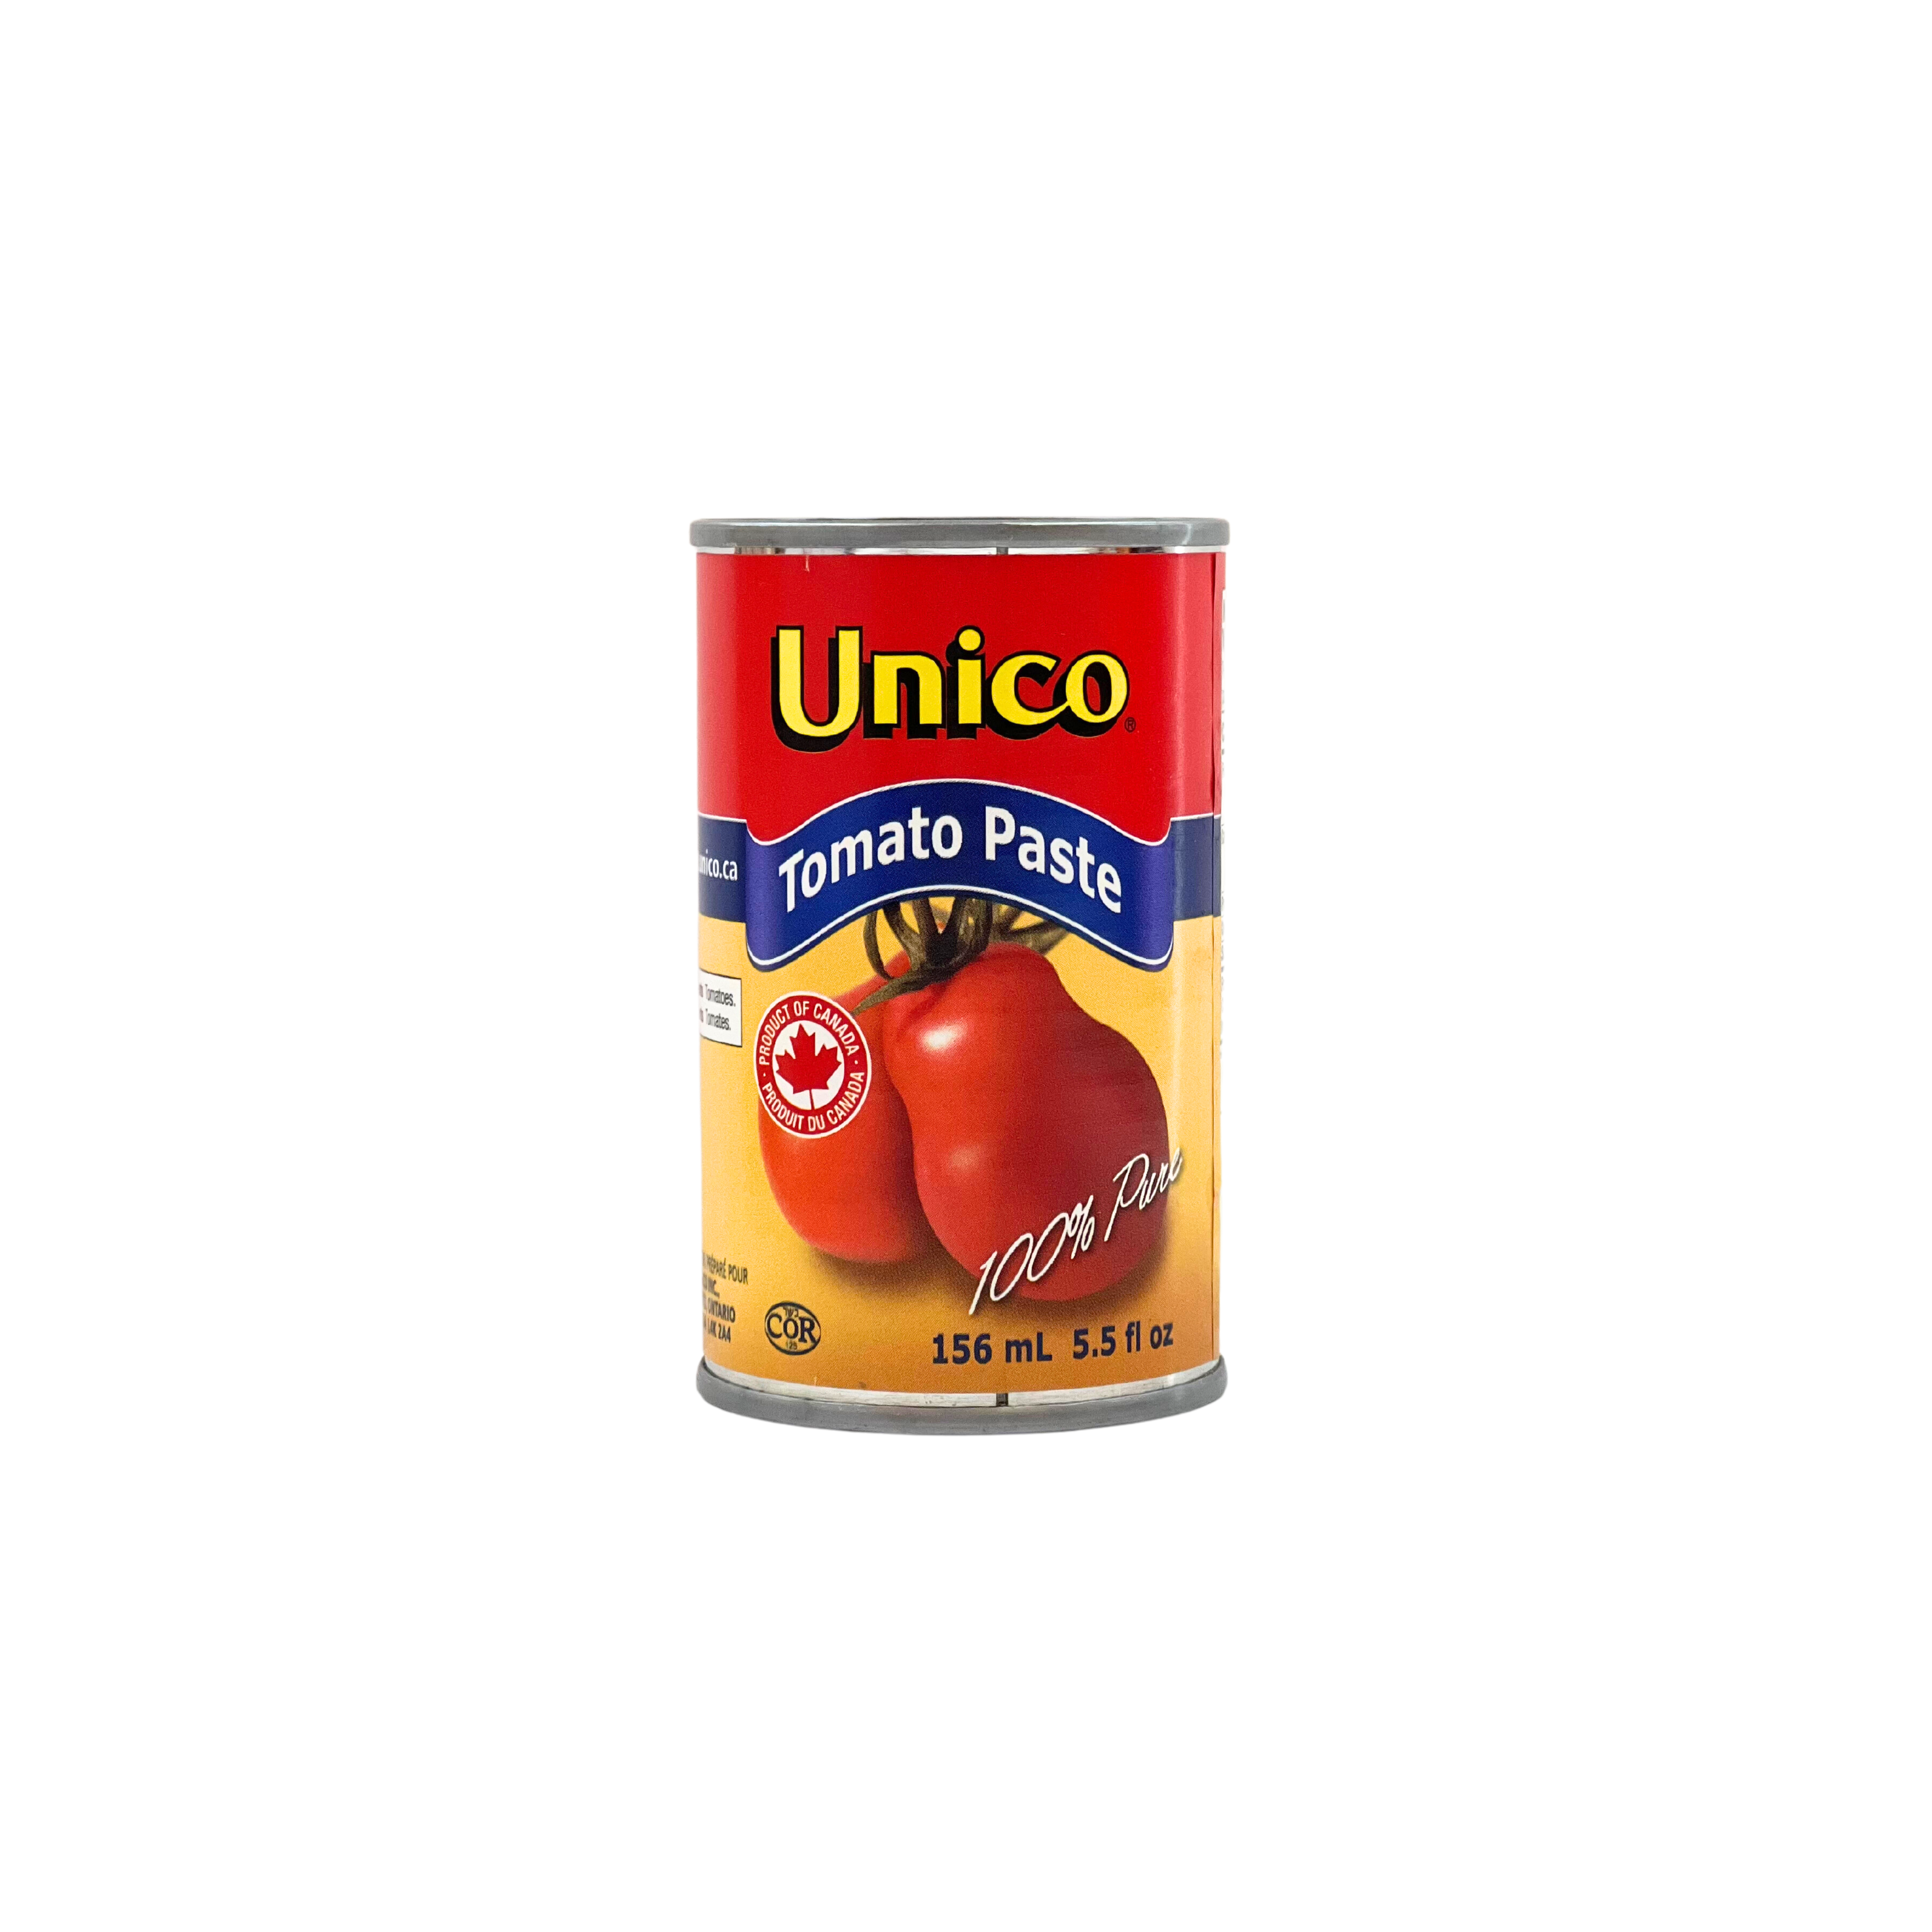 Unico Tomato Paste 156ml